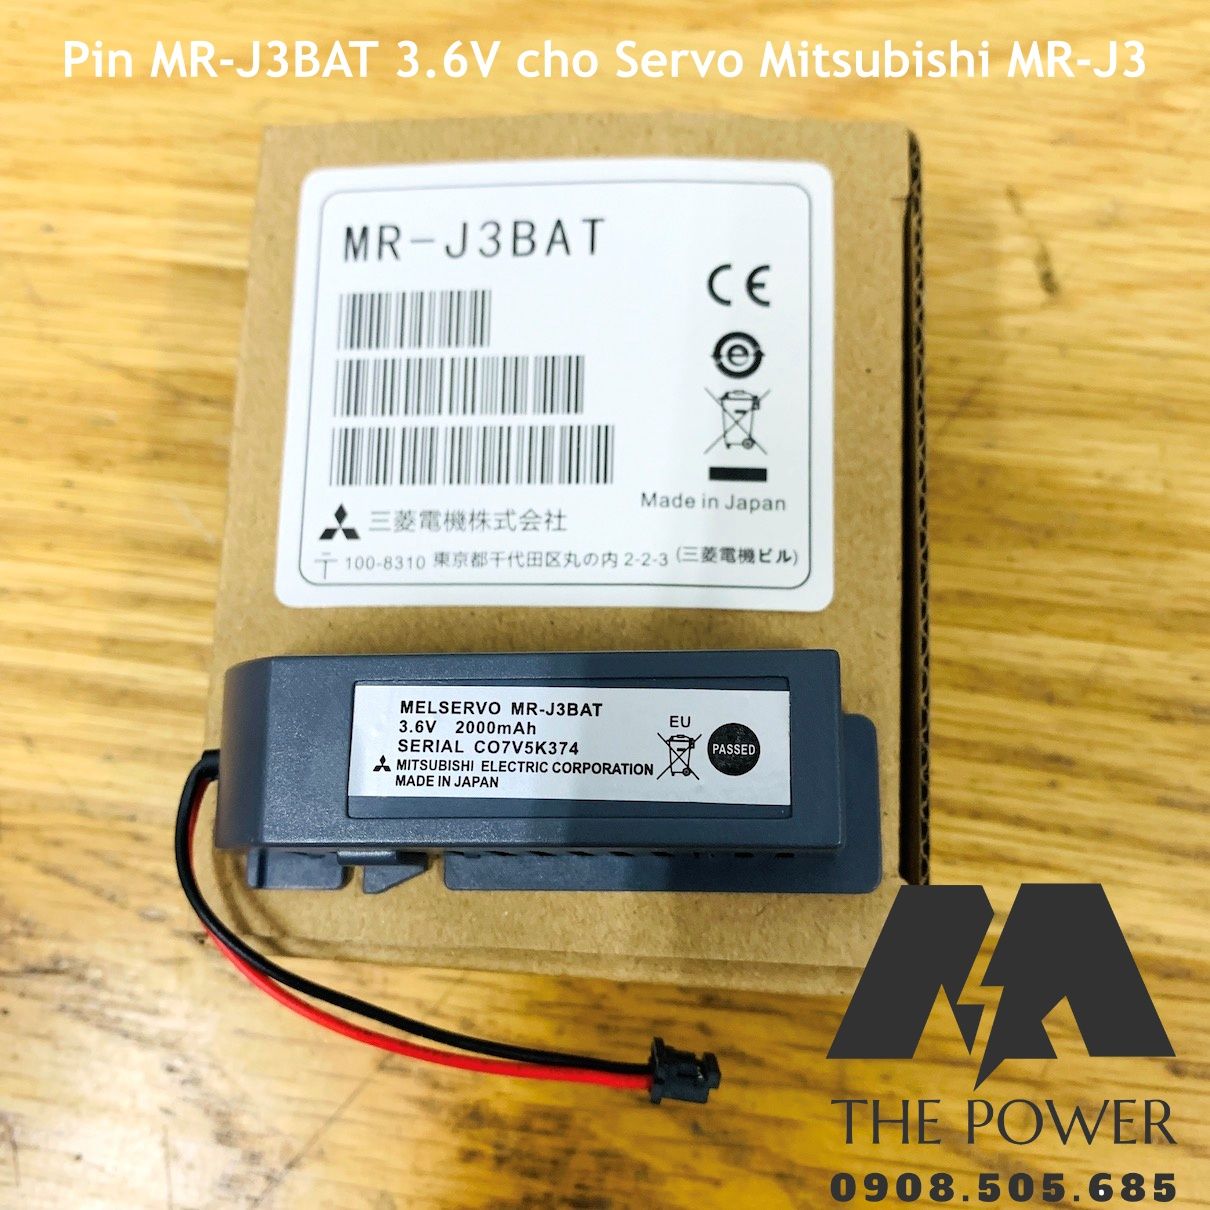 Pin MR-J3BAT 3.6V cho Servo Mitsubishi MR-J3 kèm hộp và dây nối